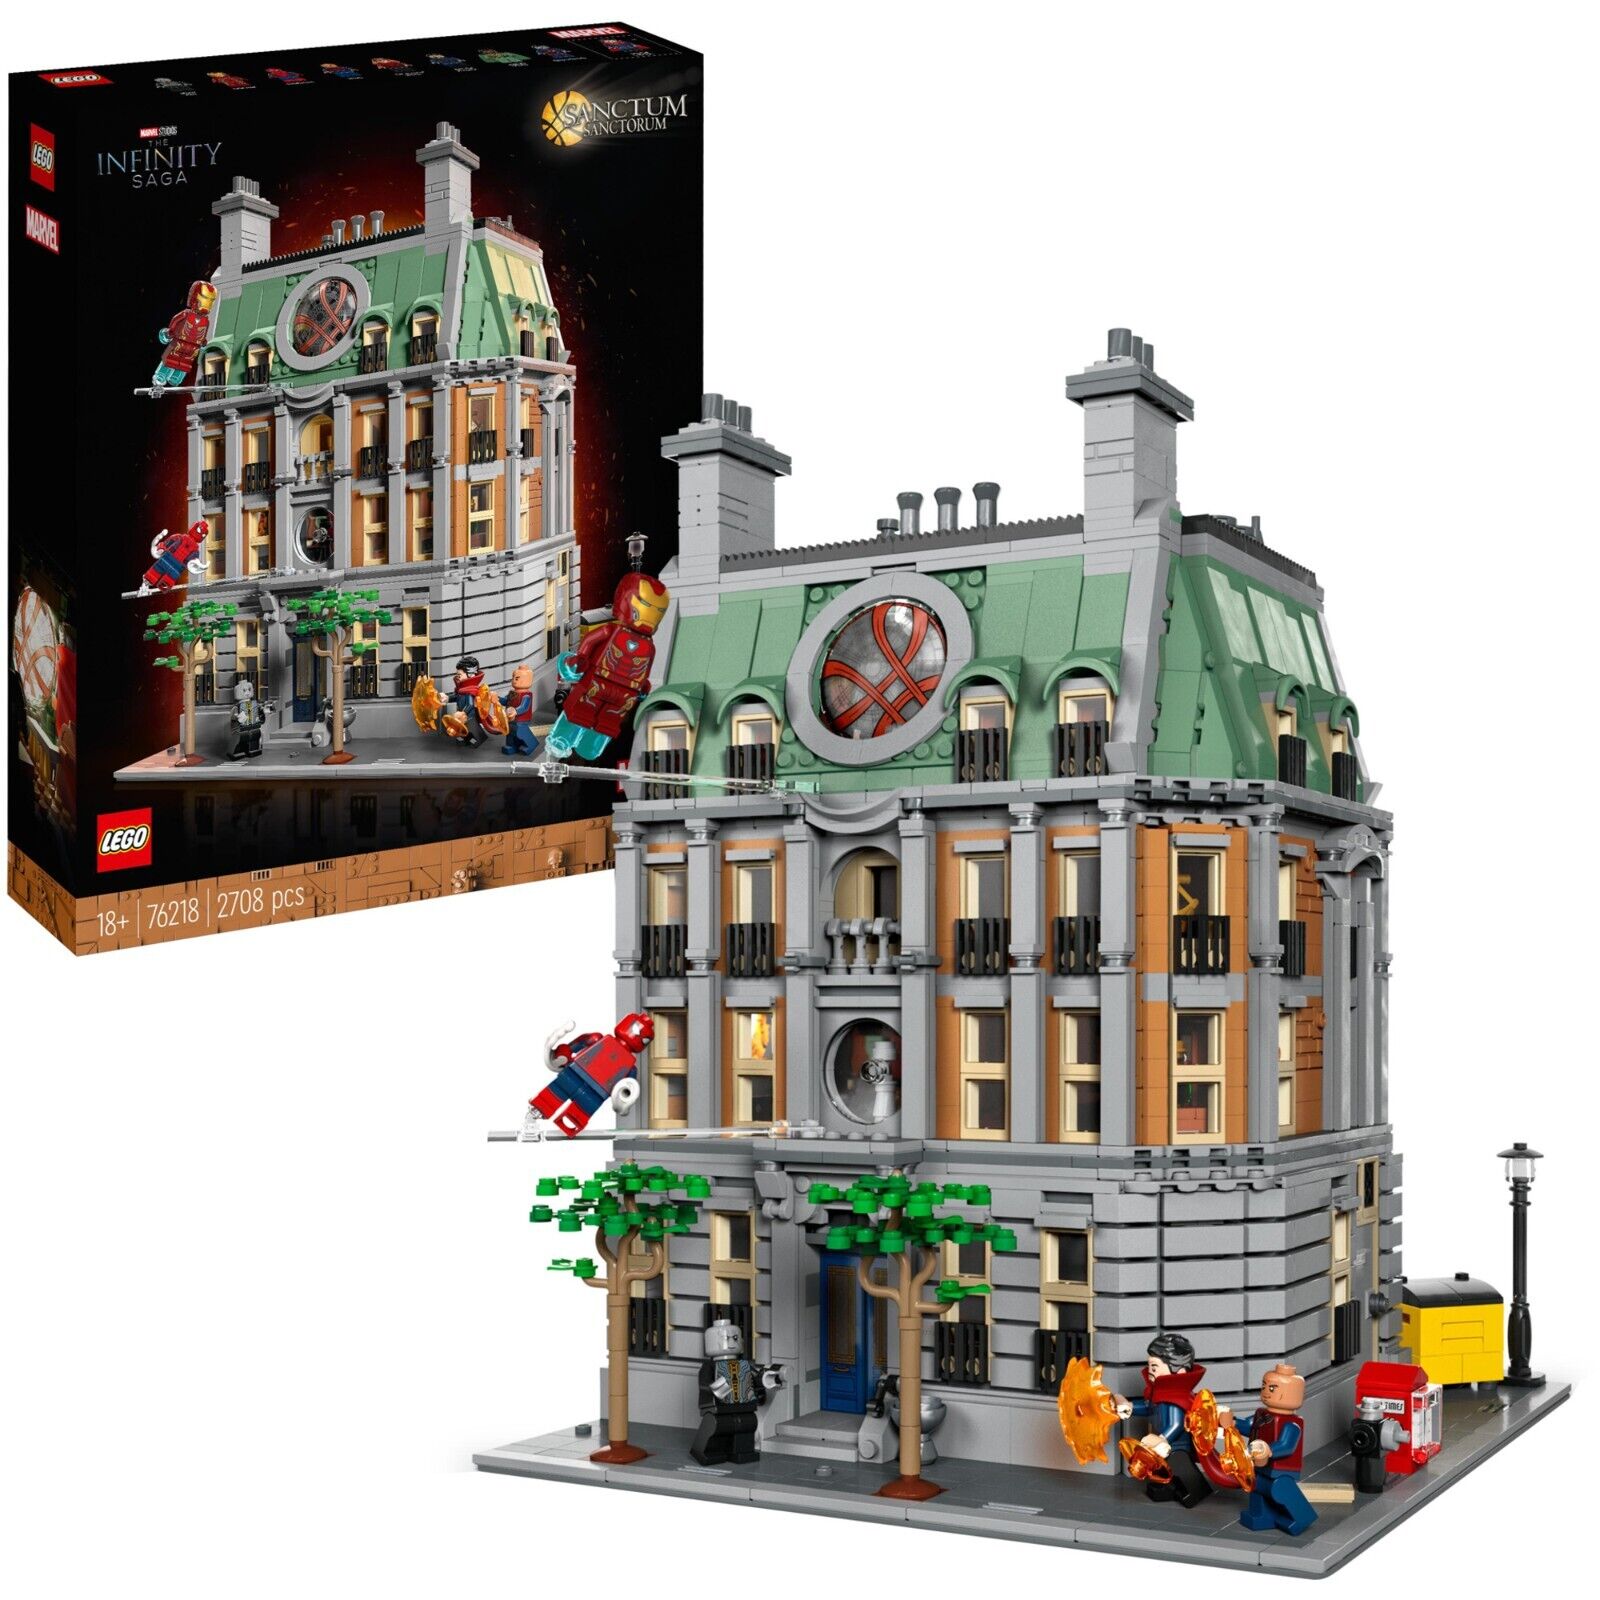 Bild zu Lego 76218 Marvel Super Heroes Sanctum Sanctorum für 159,90€ (Vergleich: 173,99€)